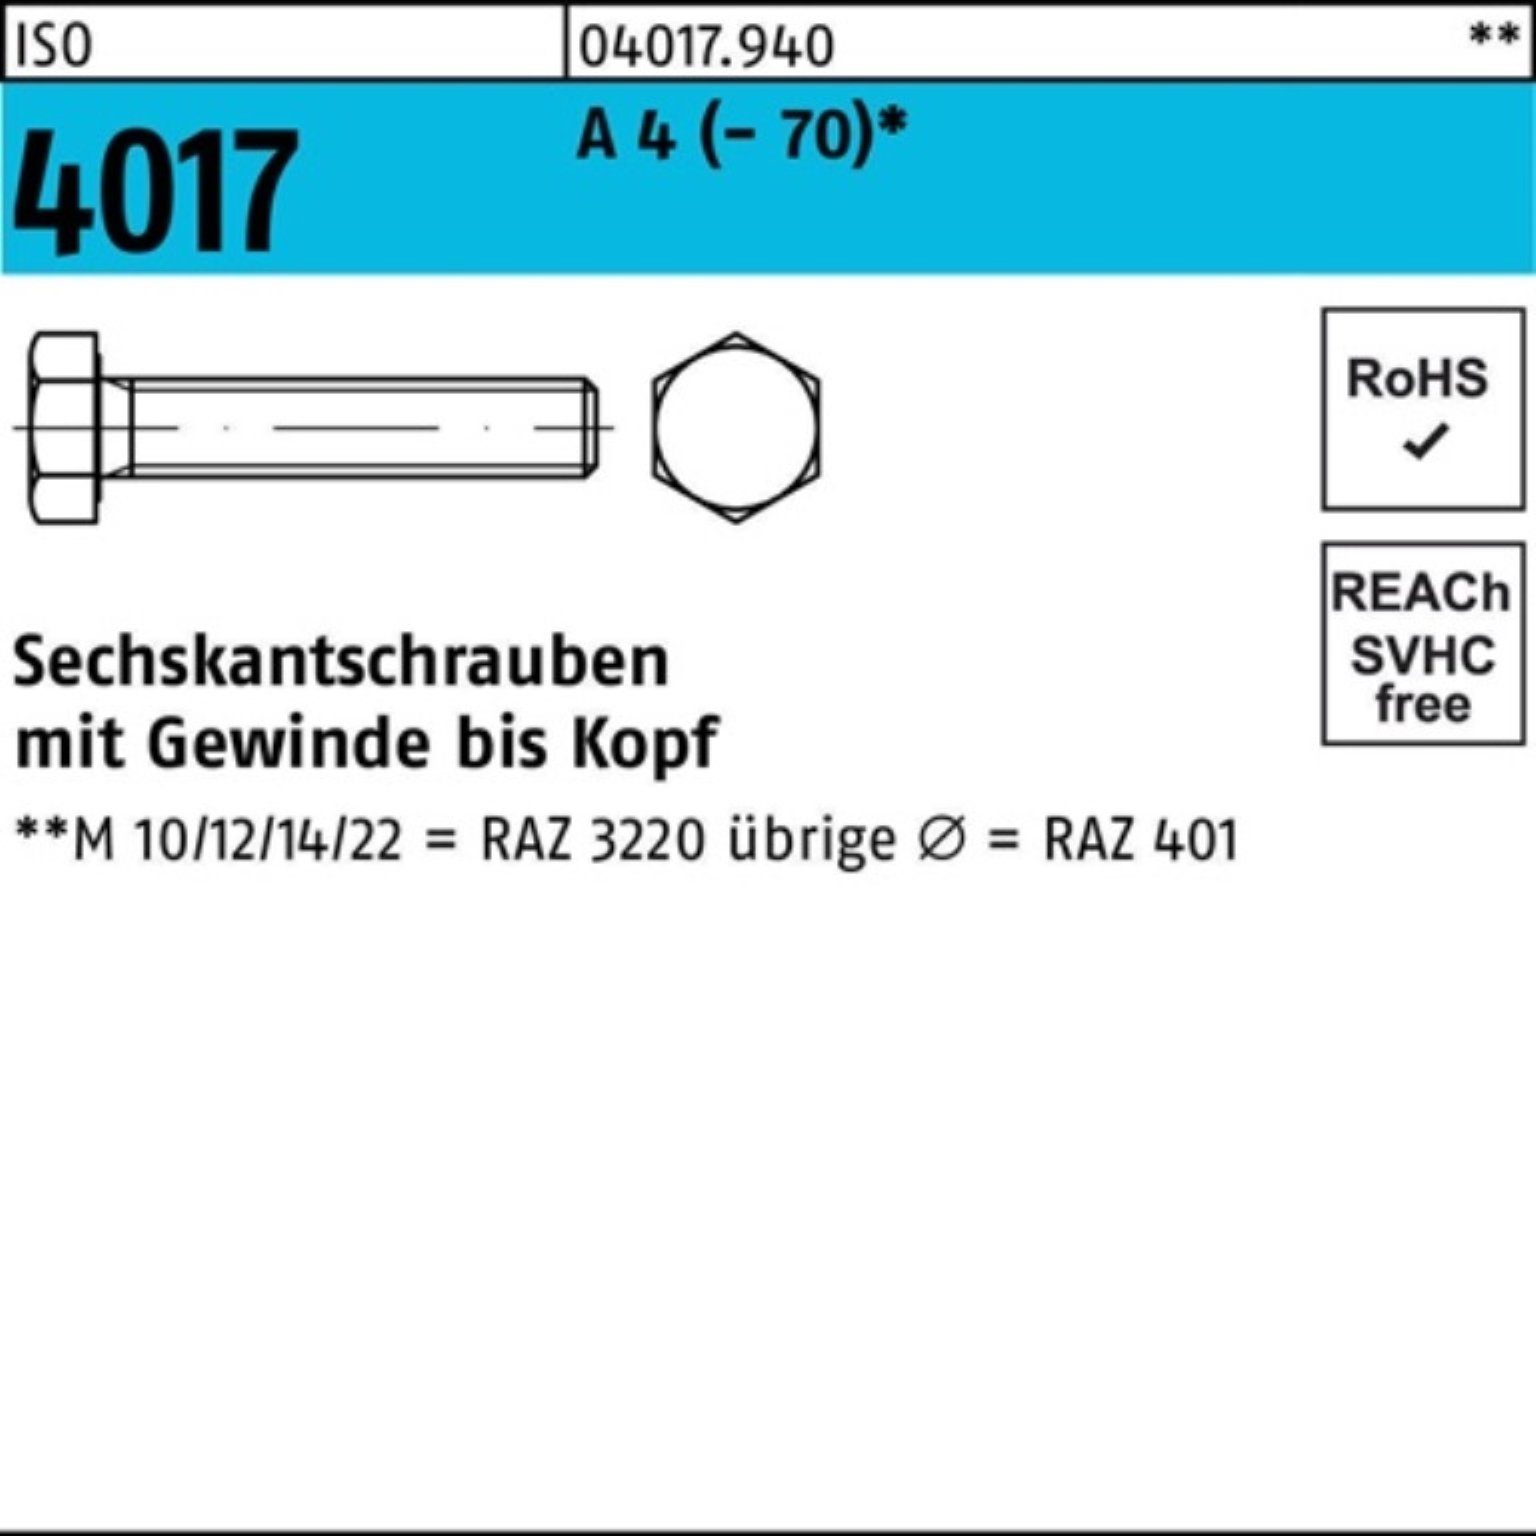 Bufab Sechskantschraube 200er Pack Sechskantschraube ISO 4017 VG M5x 30 A 4 (70) 200 Stück